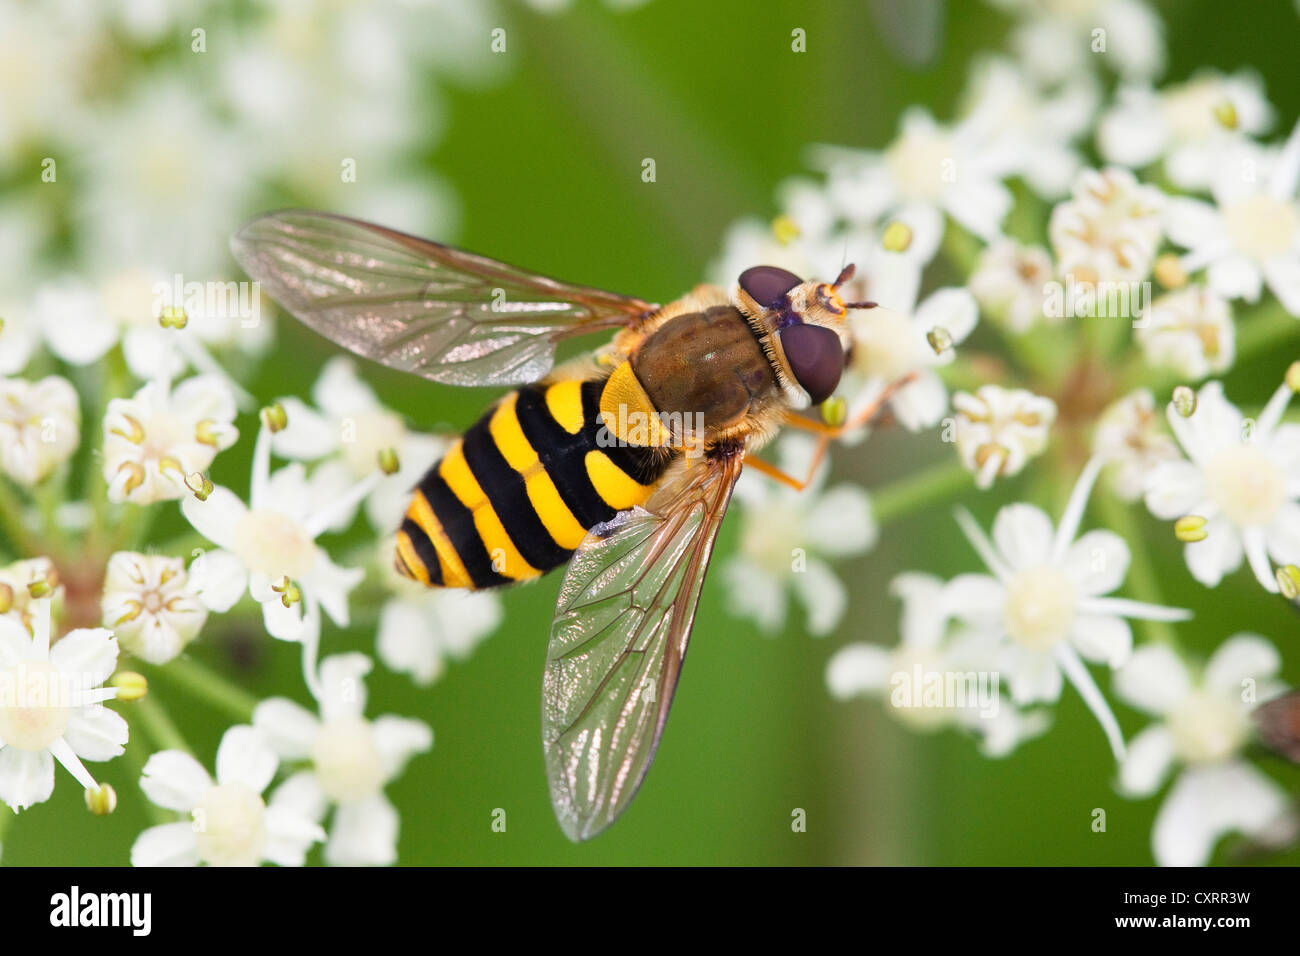 Specie europee di hoverfly (Syrphus ribesii) appollaiata su una pianta dell'ordine Umbelliflorae, Baviera, Germania, Europa Foto Stock